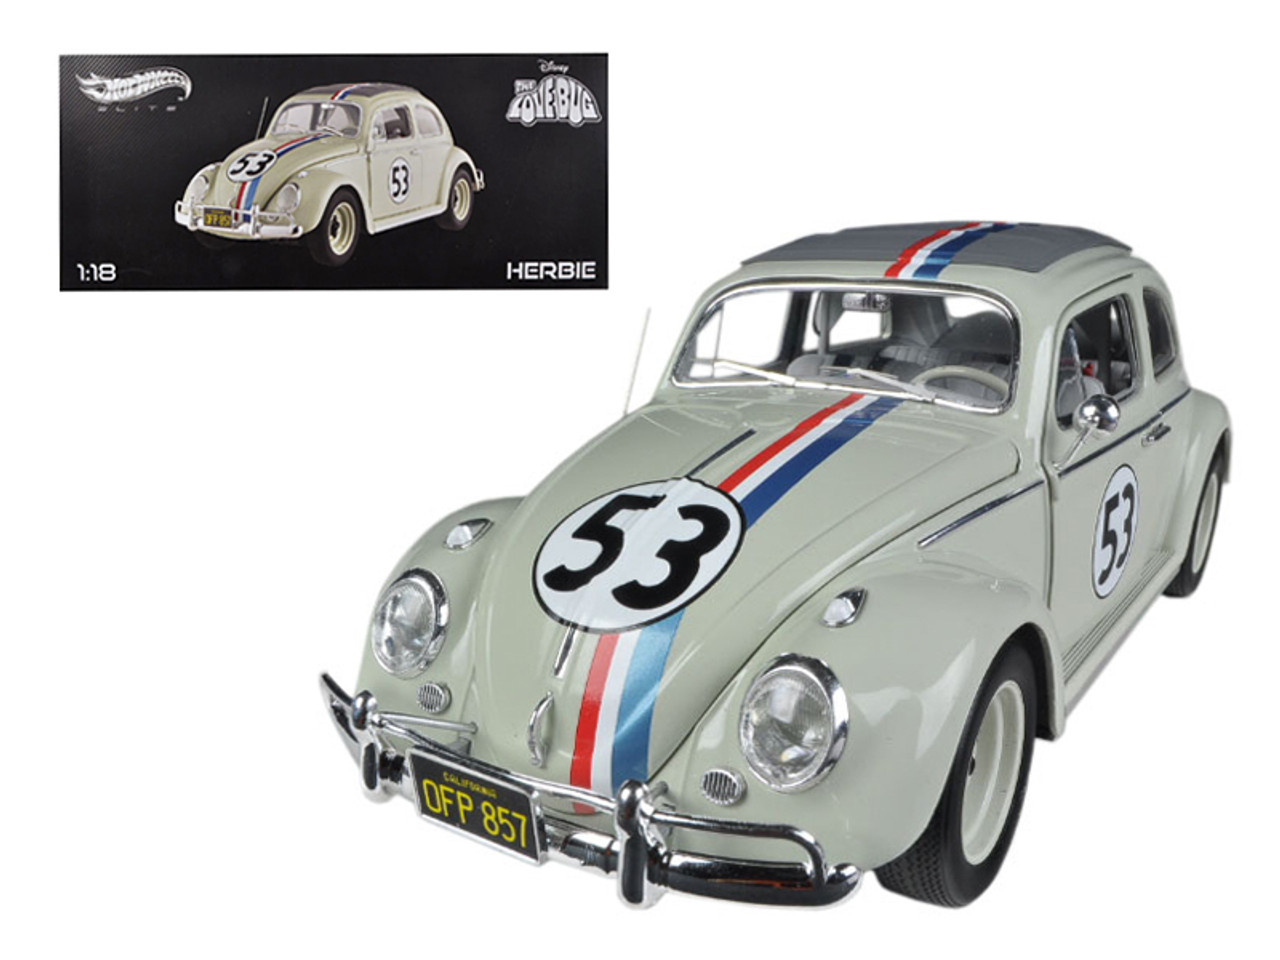 1963 Volkswagen Beetle "The Love Bug" Herbie #53 Elite Edition 1/18 Diecast Car Model by Hotwheels